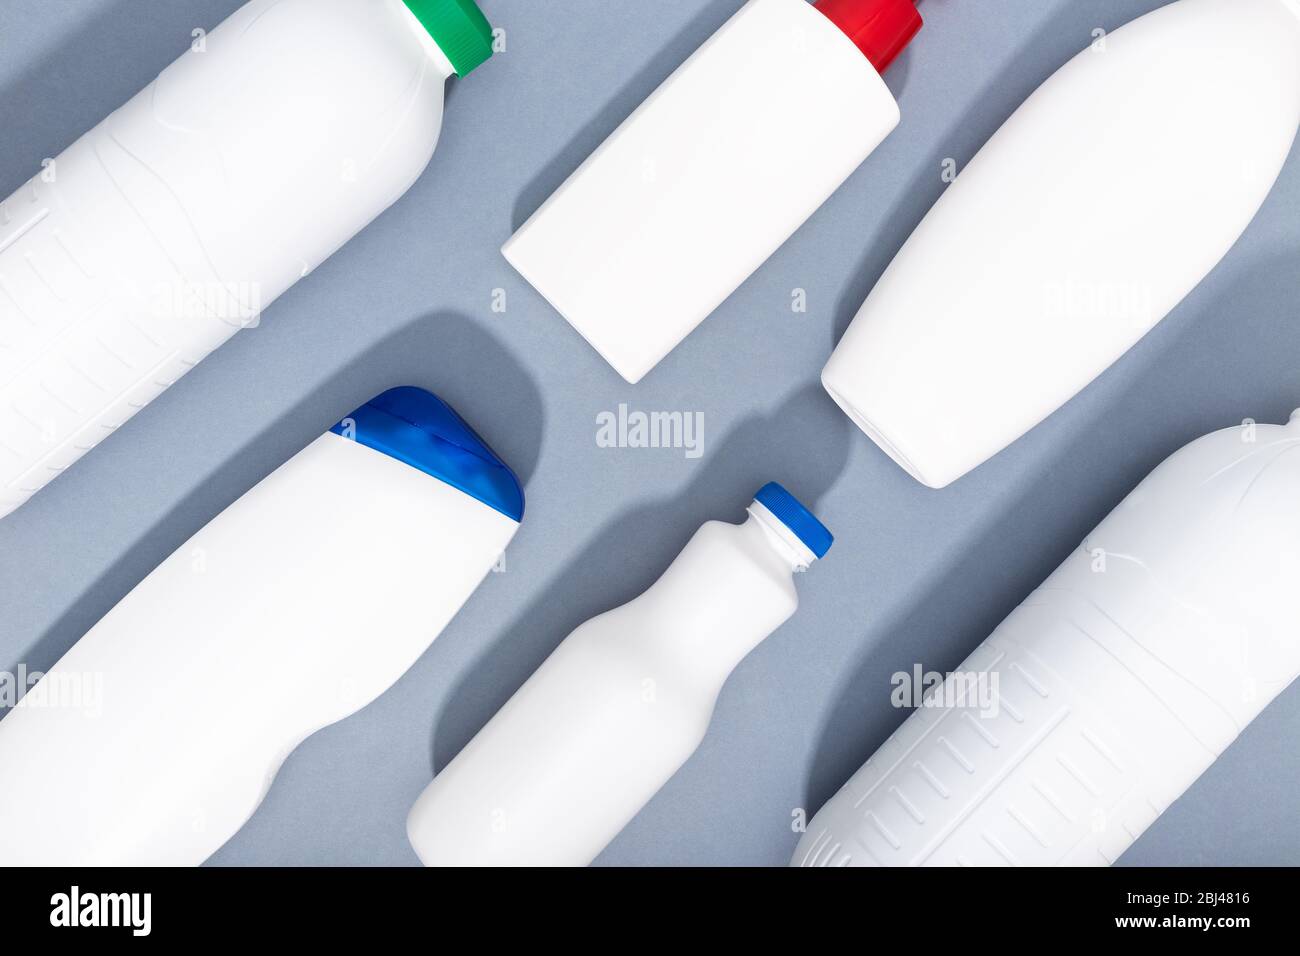 Groupe de bouteilles en plastique blanc sur fond gris. Fond de recyclage du plastique. Vue de dessus Banque D'Images